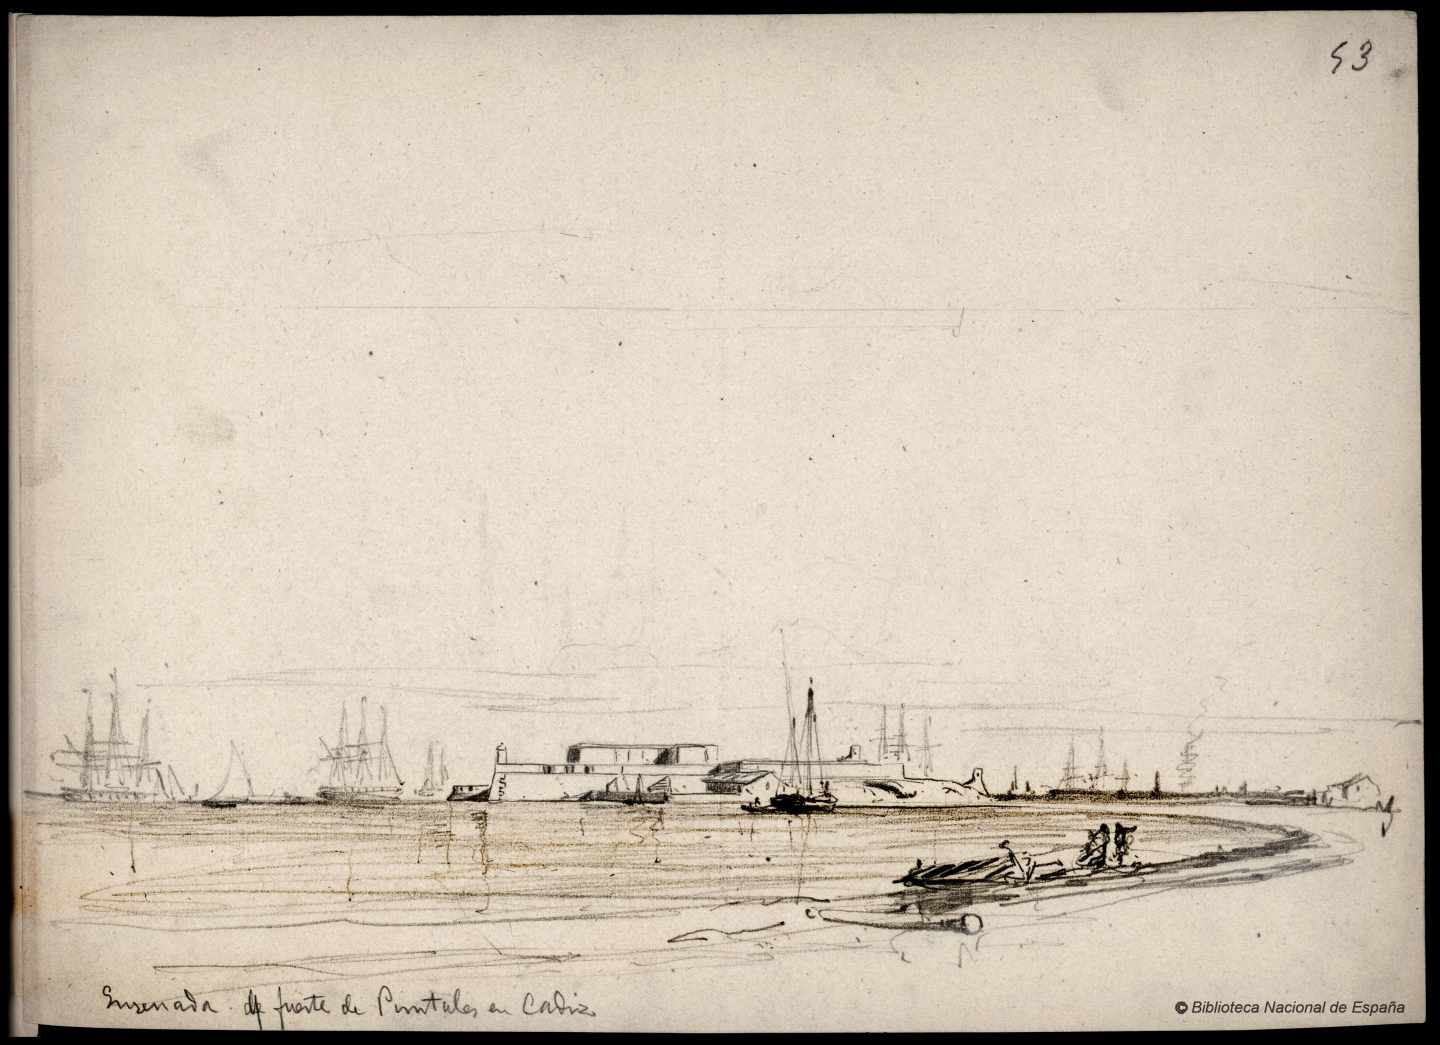 Ensenada del fuerte de Puntales en Cádiz. 1843-1899. Rafael Monleón y Torres